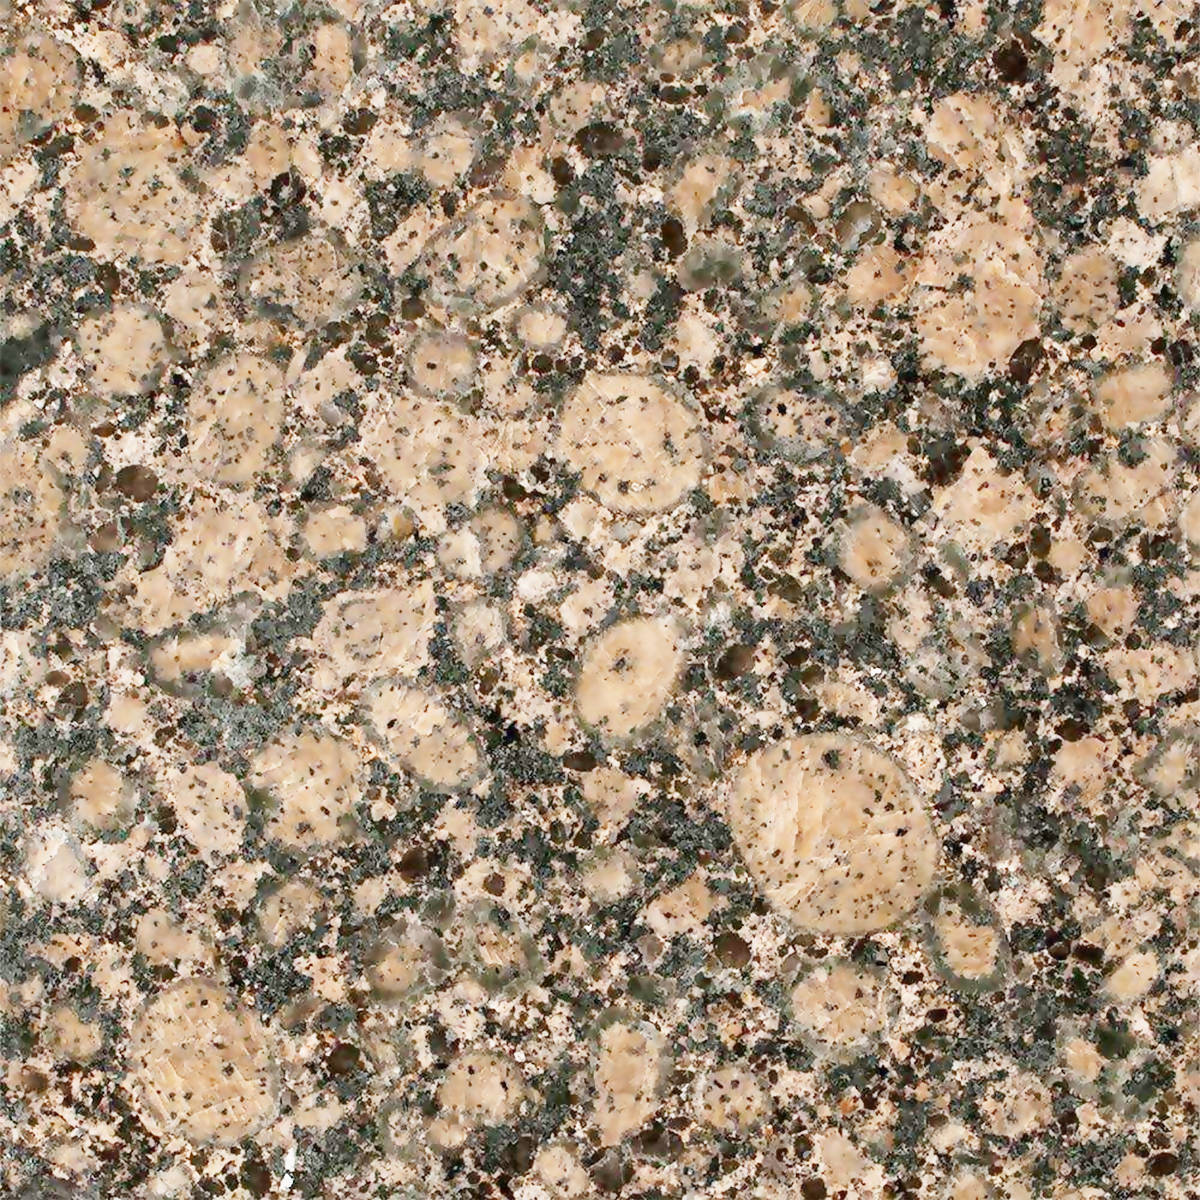 BALTIC BROWN GRANITE,Granite,Blyth Marble Ltd,www.work-tops.com